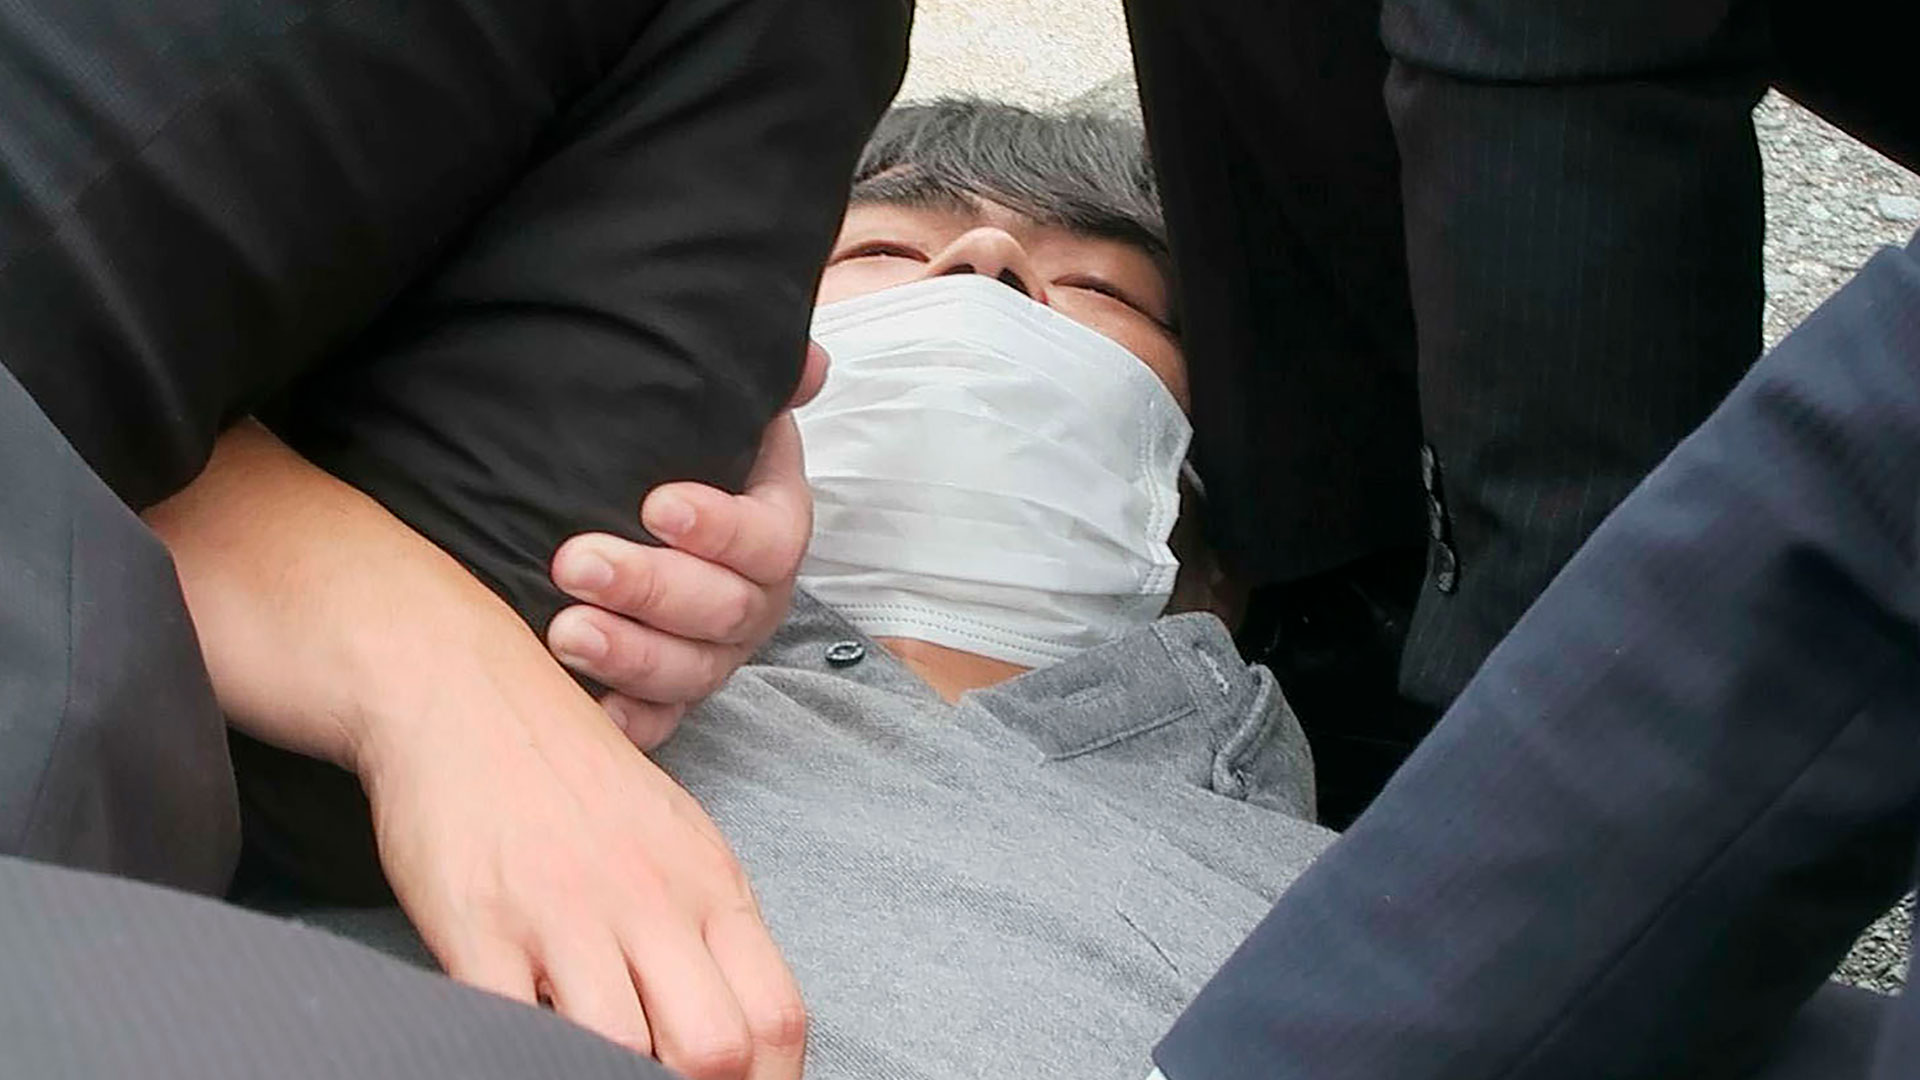 El asesino yace arrestado en Nara, tras cometer el crimen de Abe (AP)